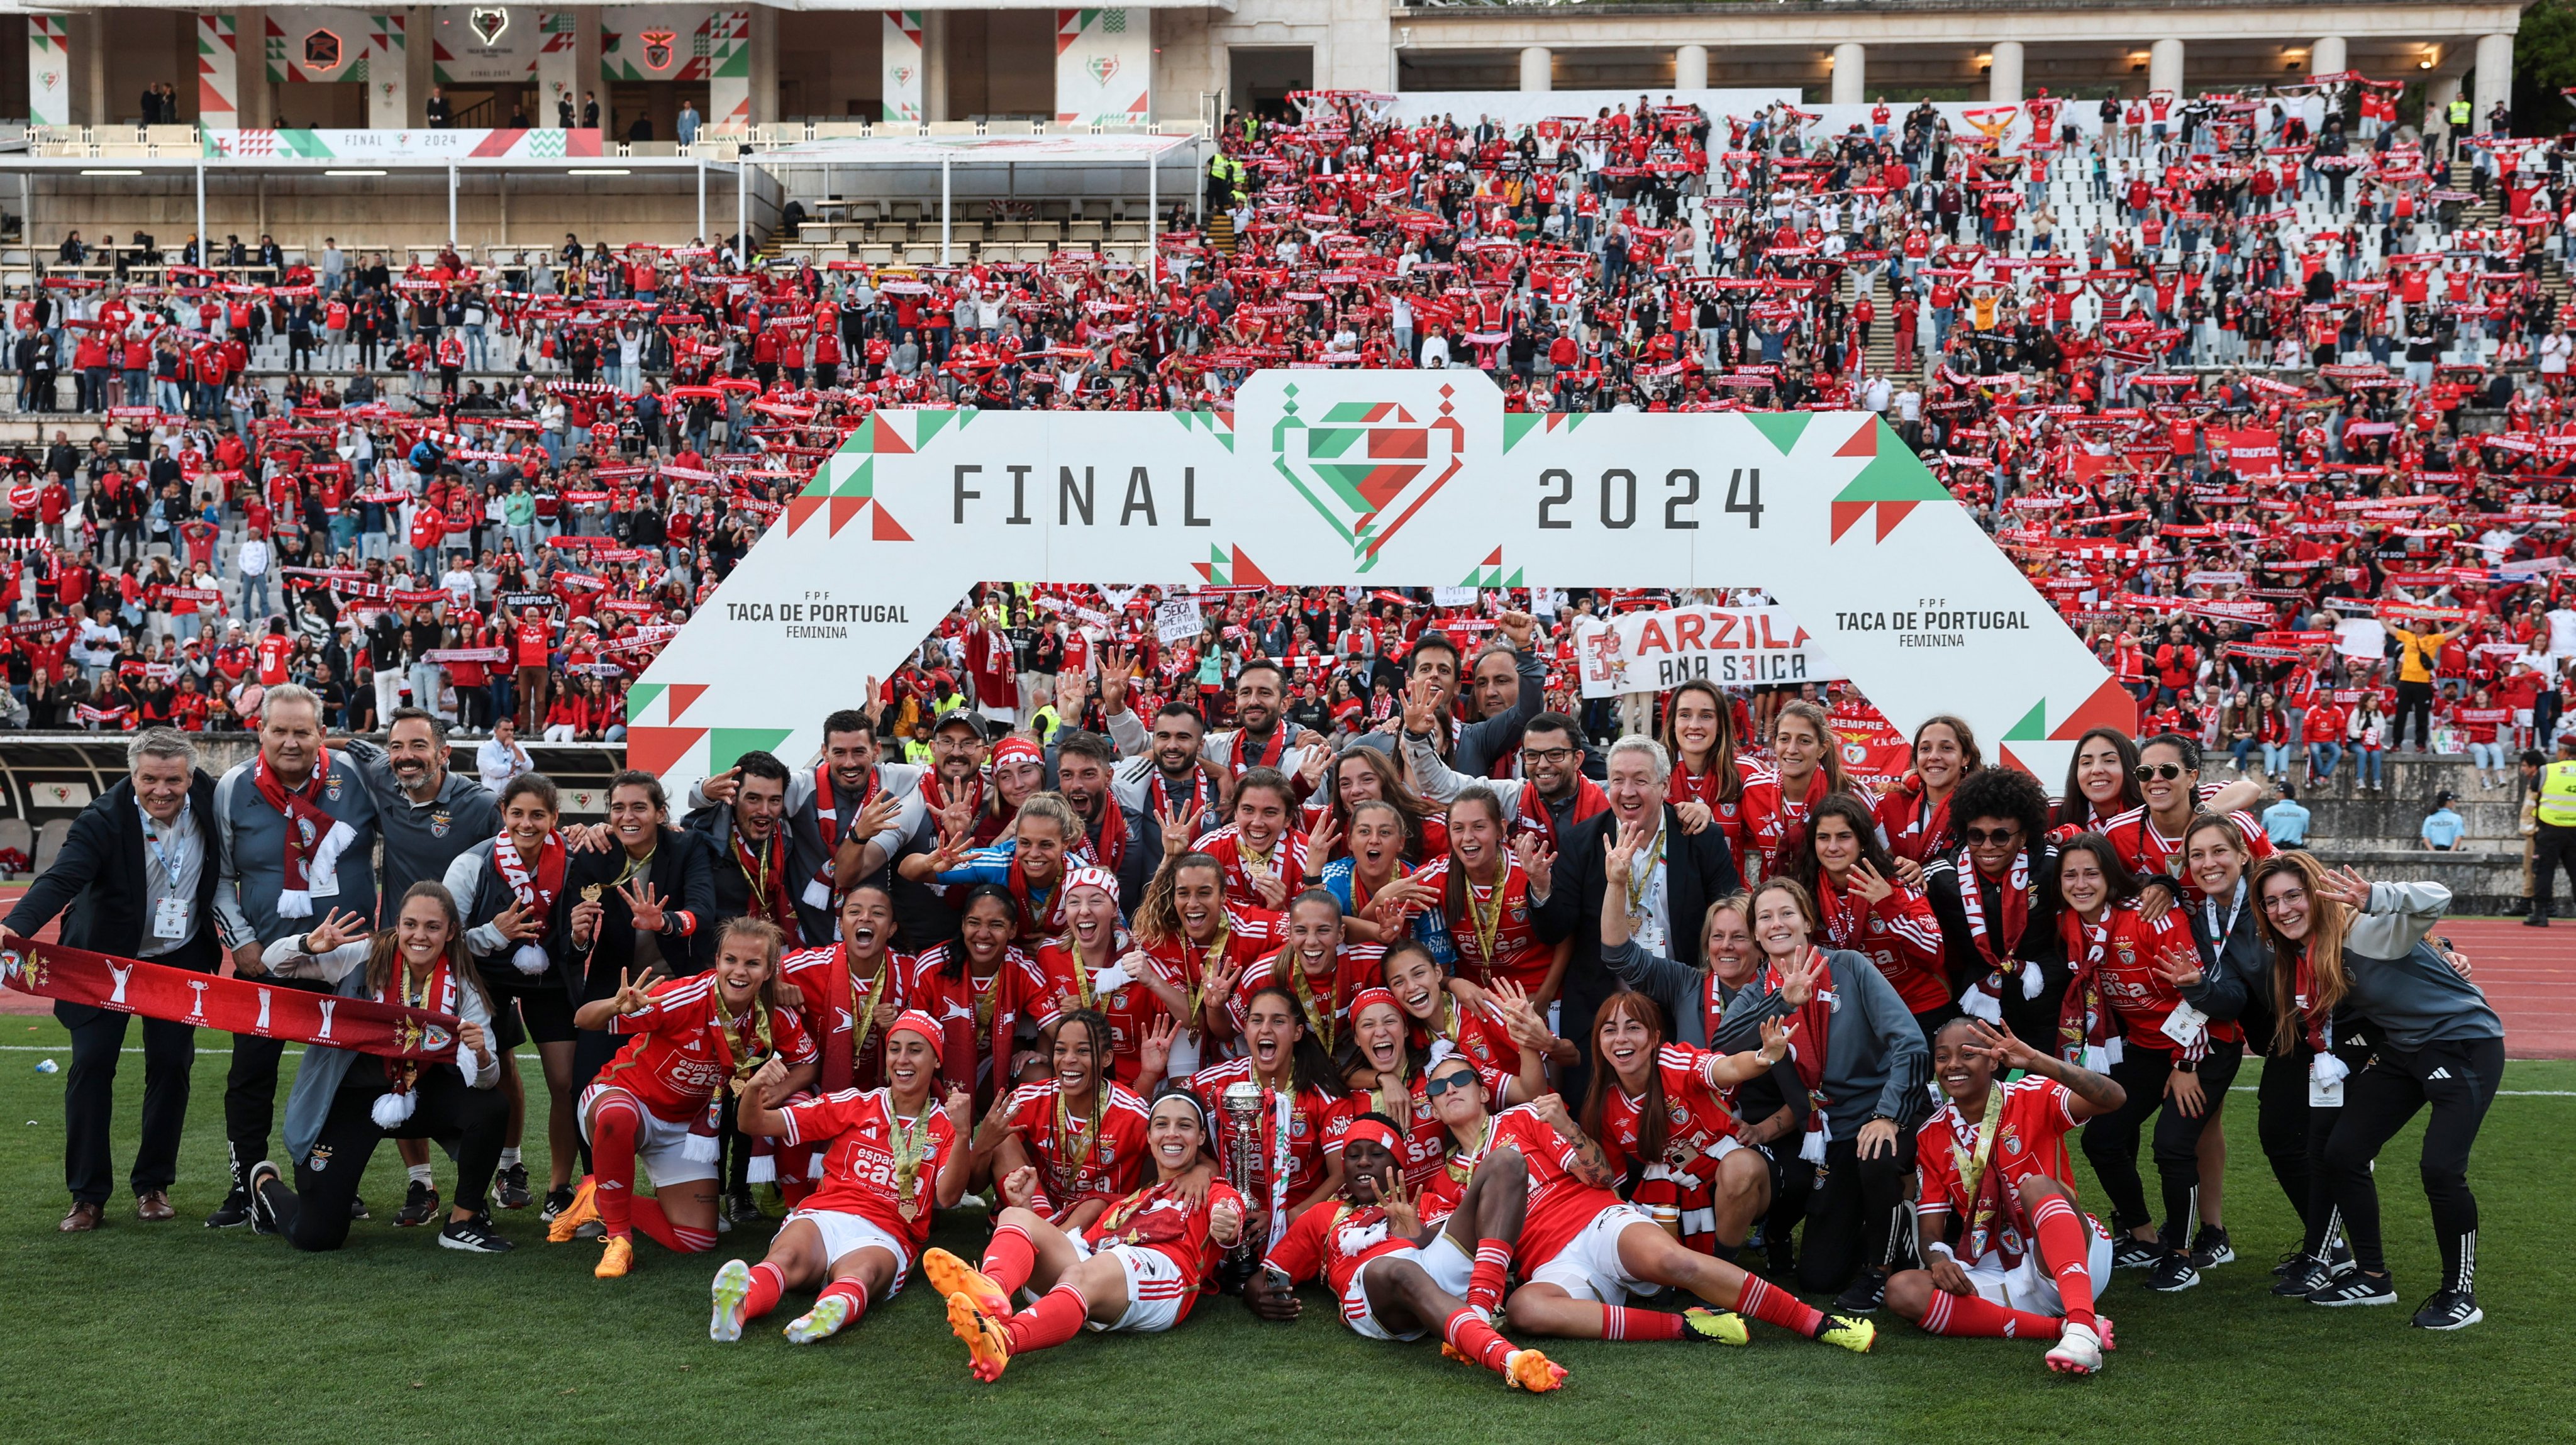 Depois de uma primeira parte equilibrada, Benfica disparou para a conquista da segunda Taça de Portugal do seu historial frente ao Racing Power